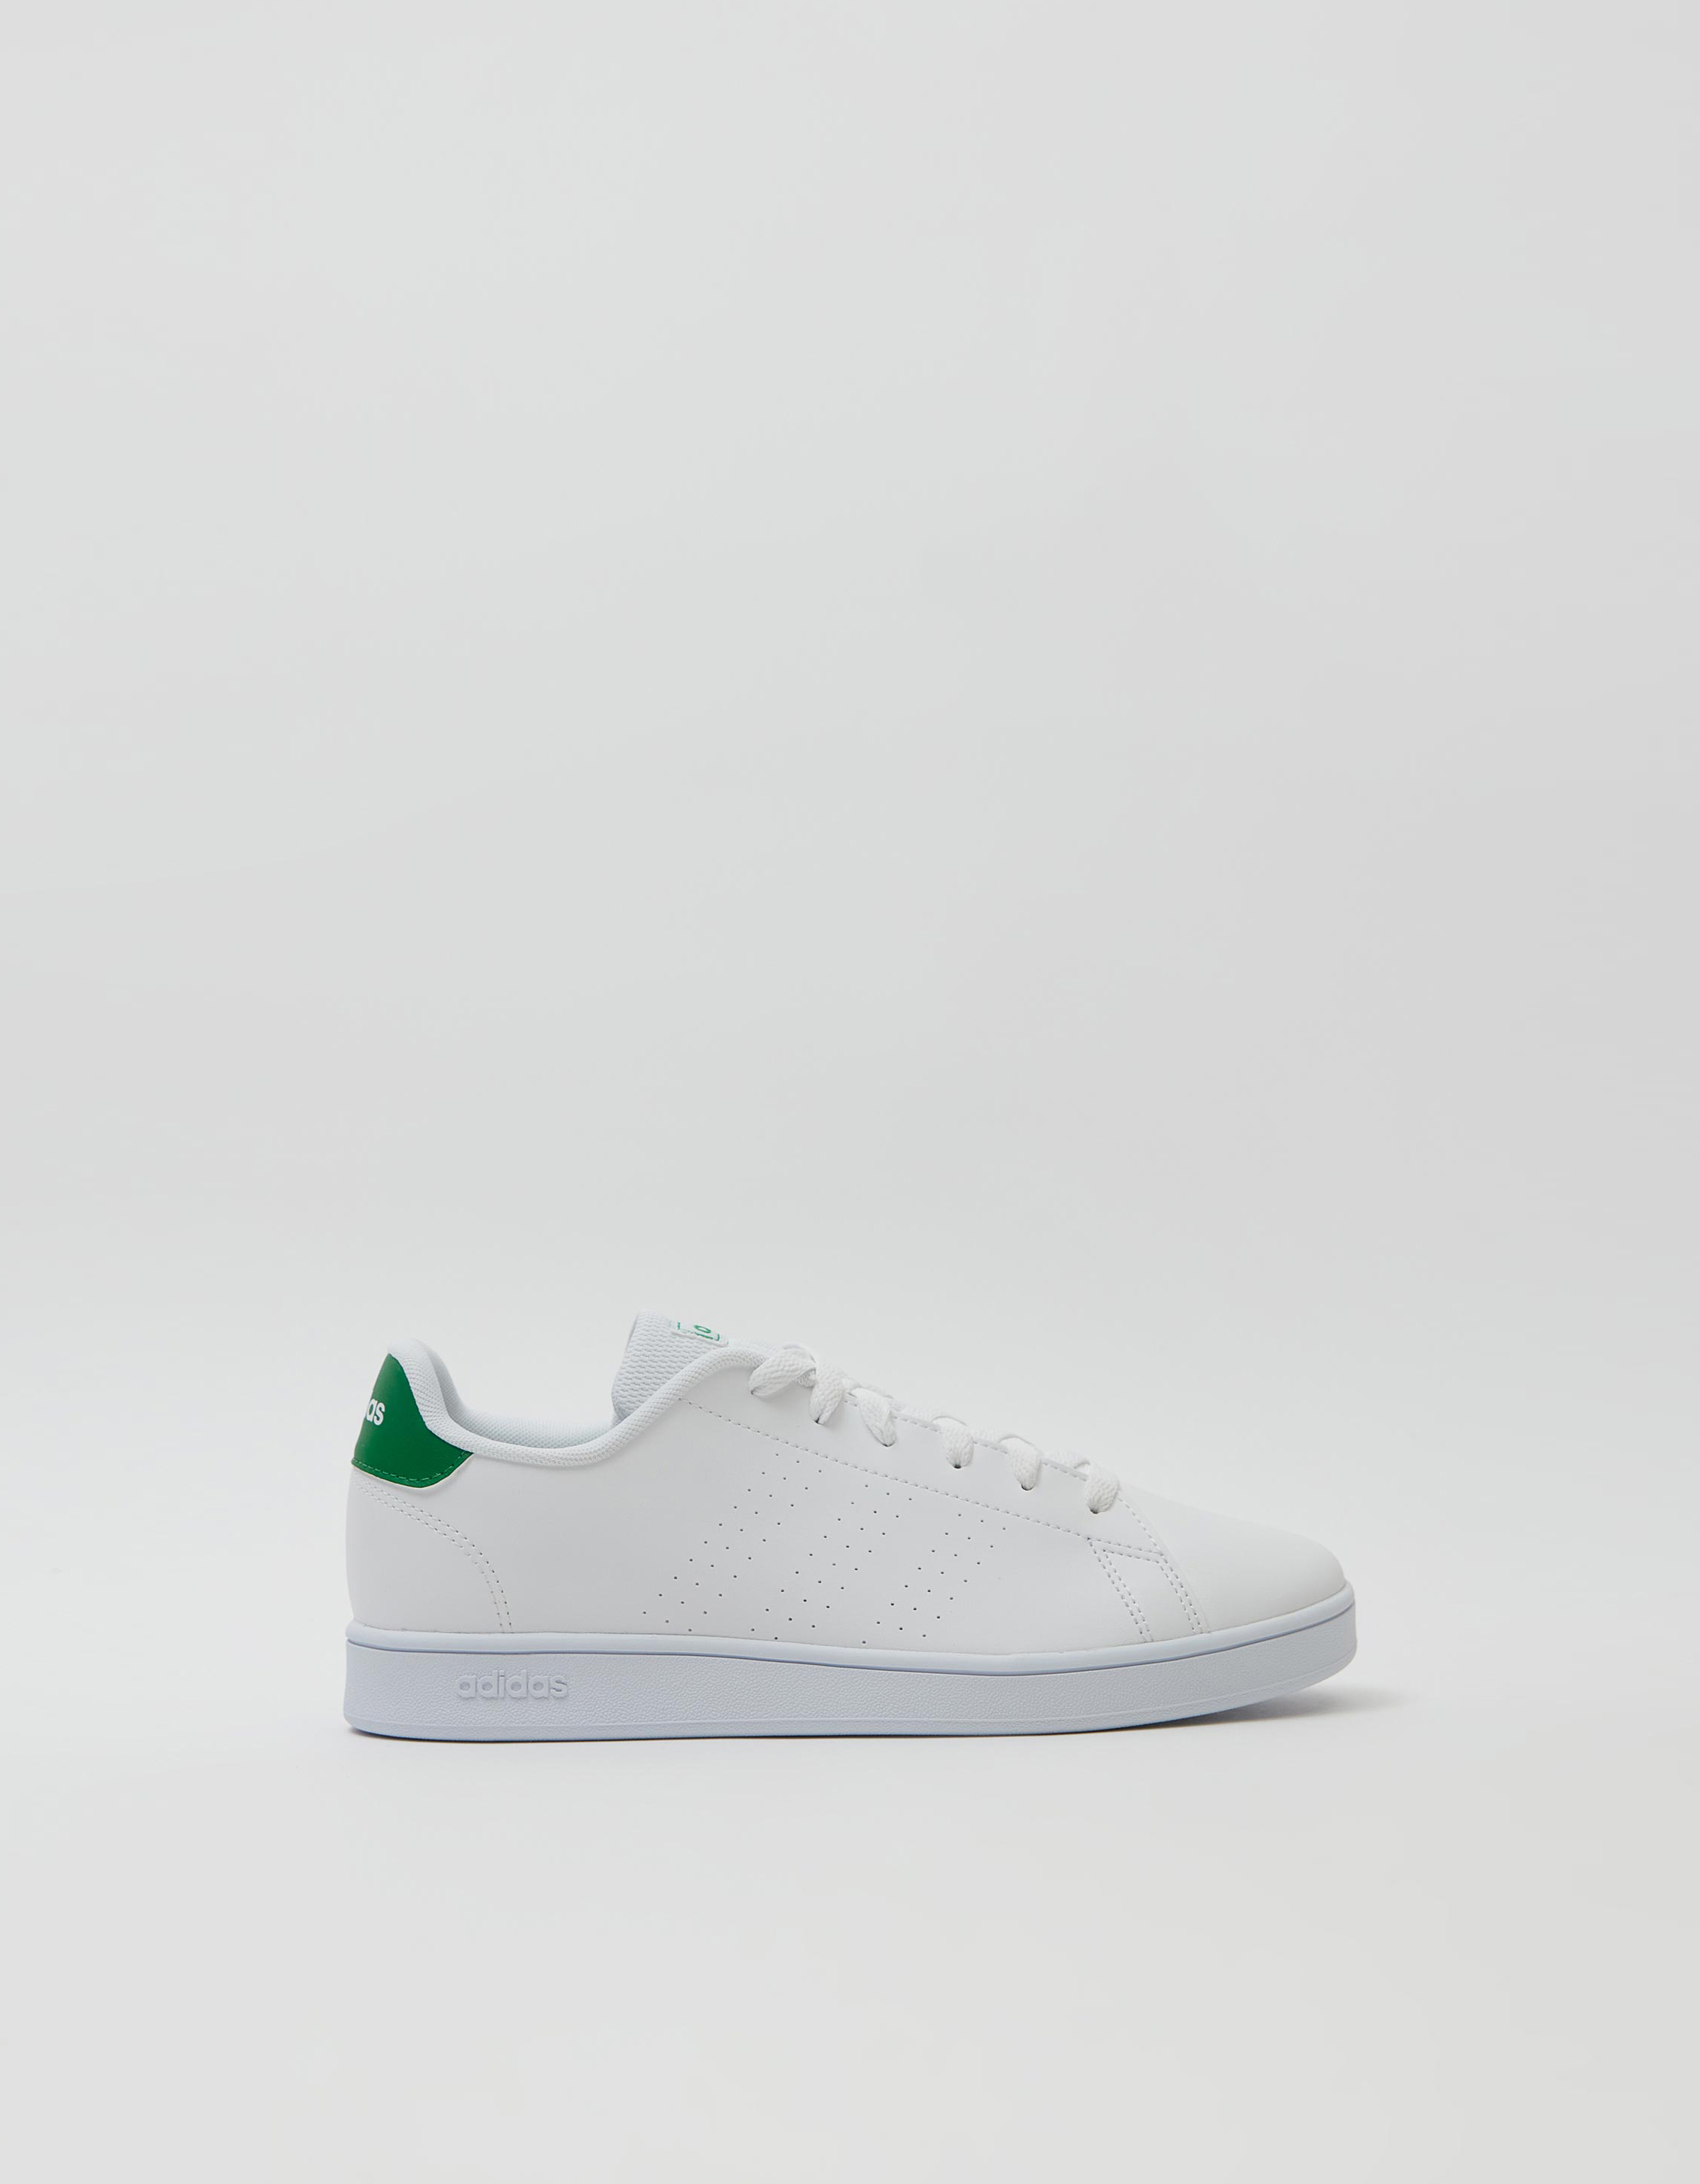 Zapatillas Adidas Advantage Blanco/Verde | Zippy